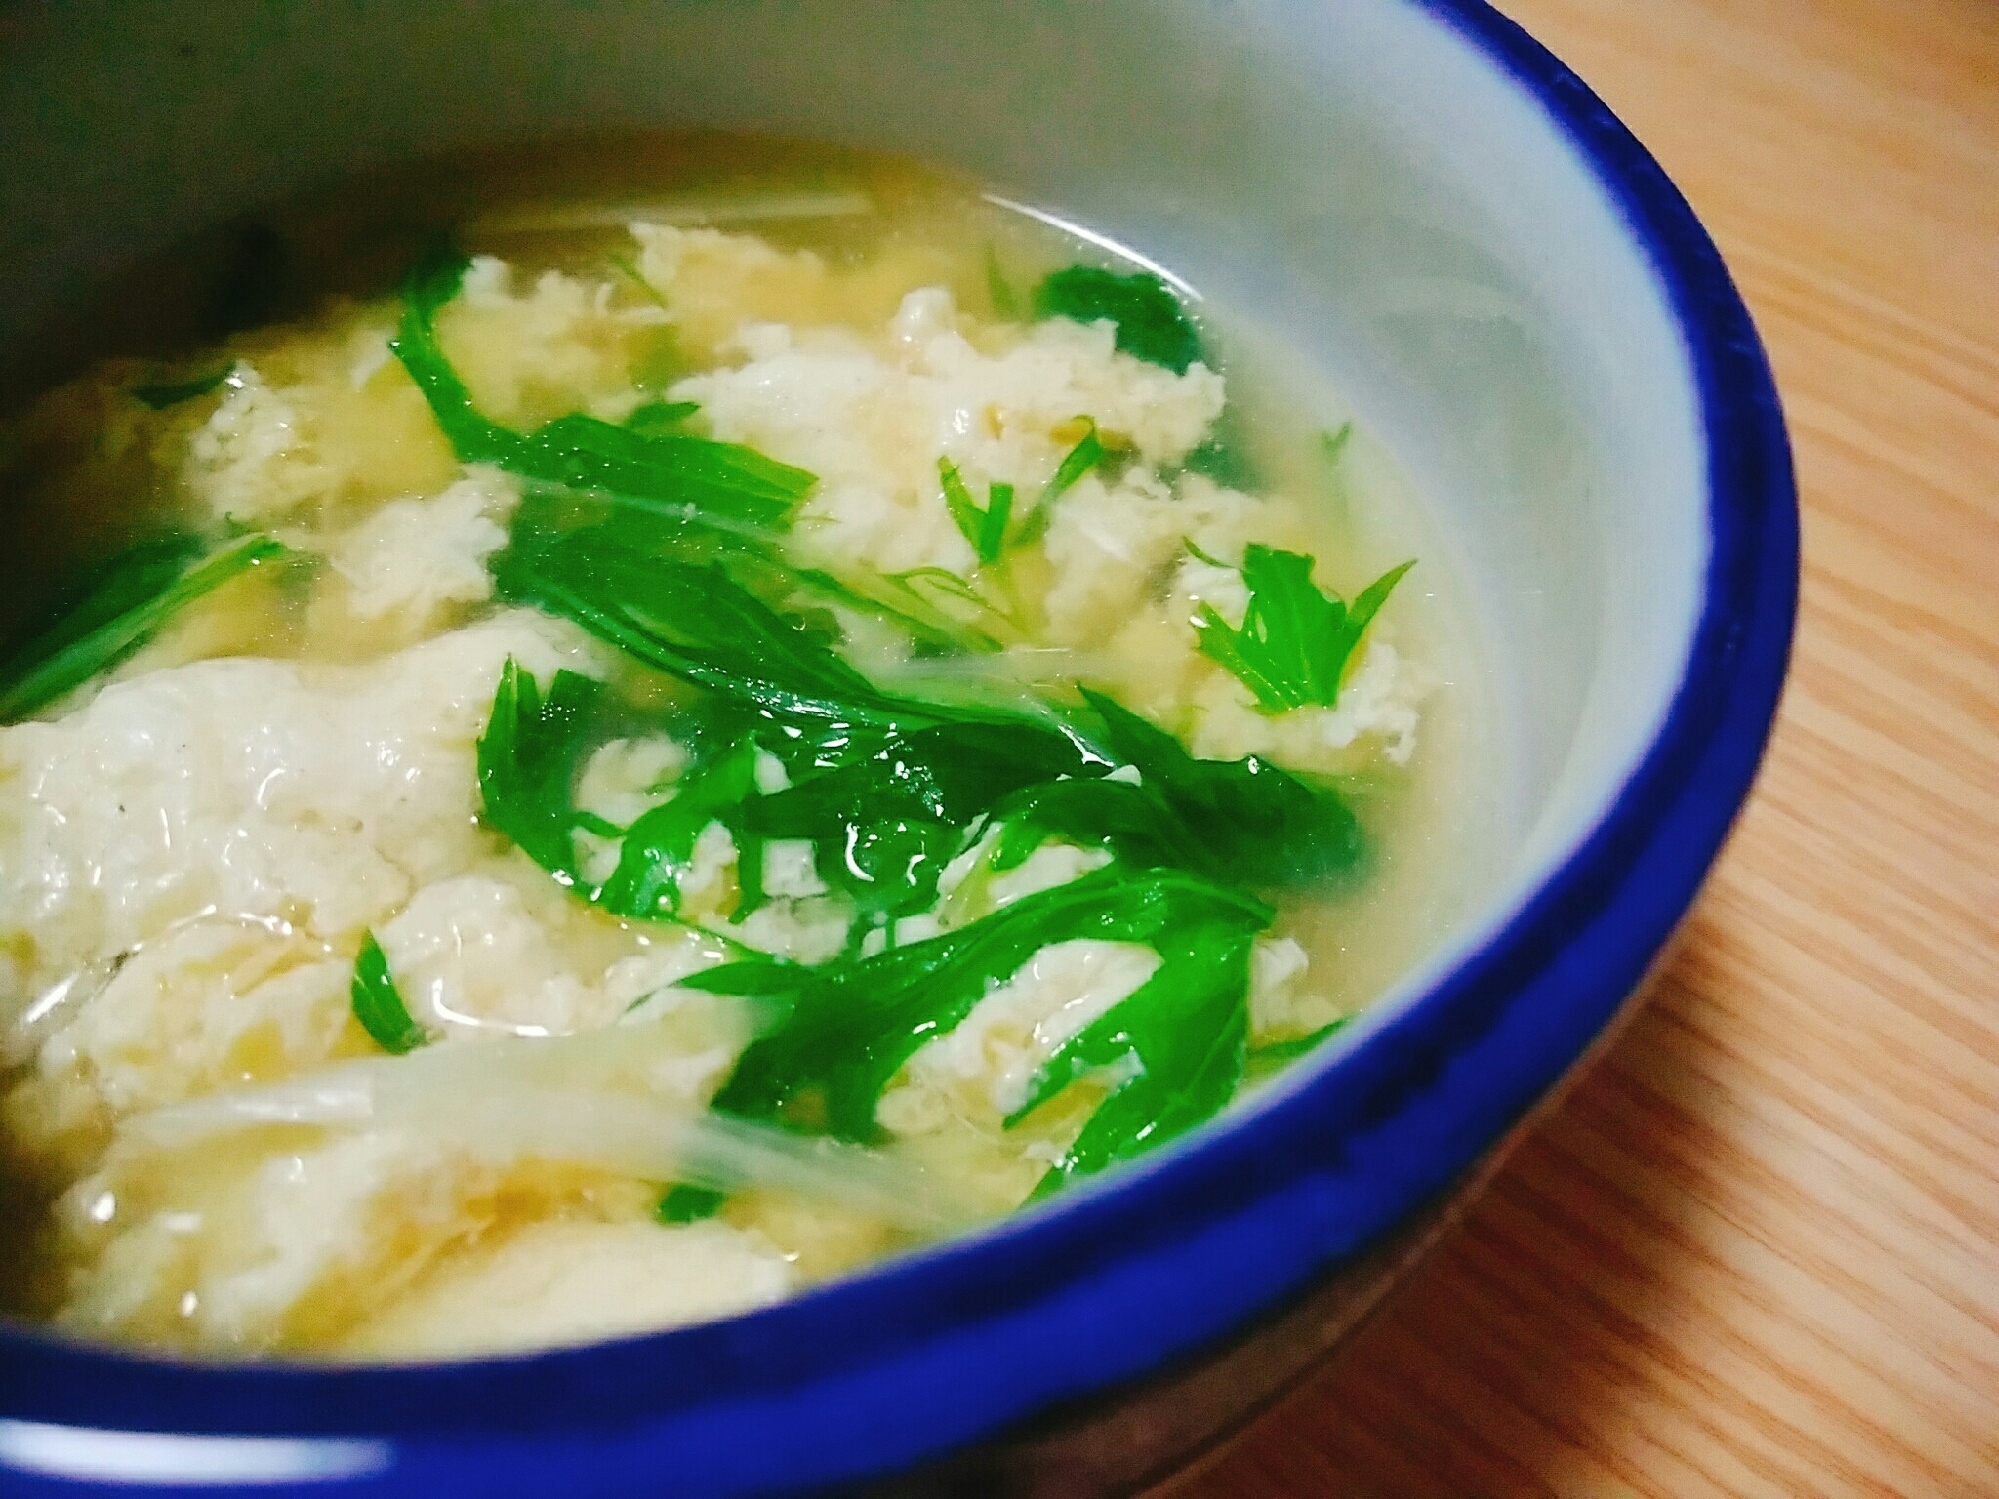 水菜と卵の中華スープ